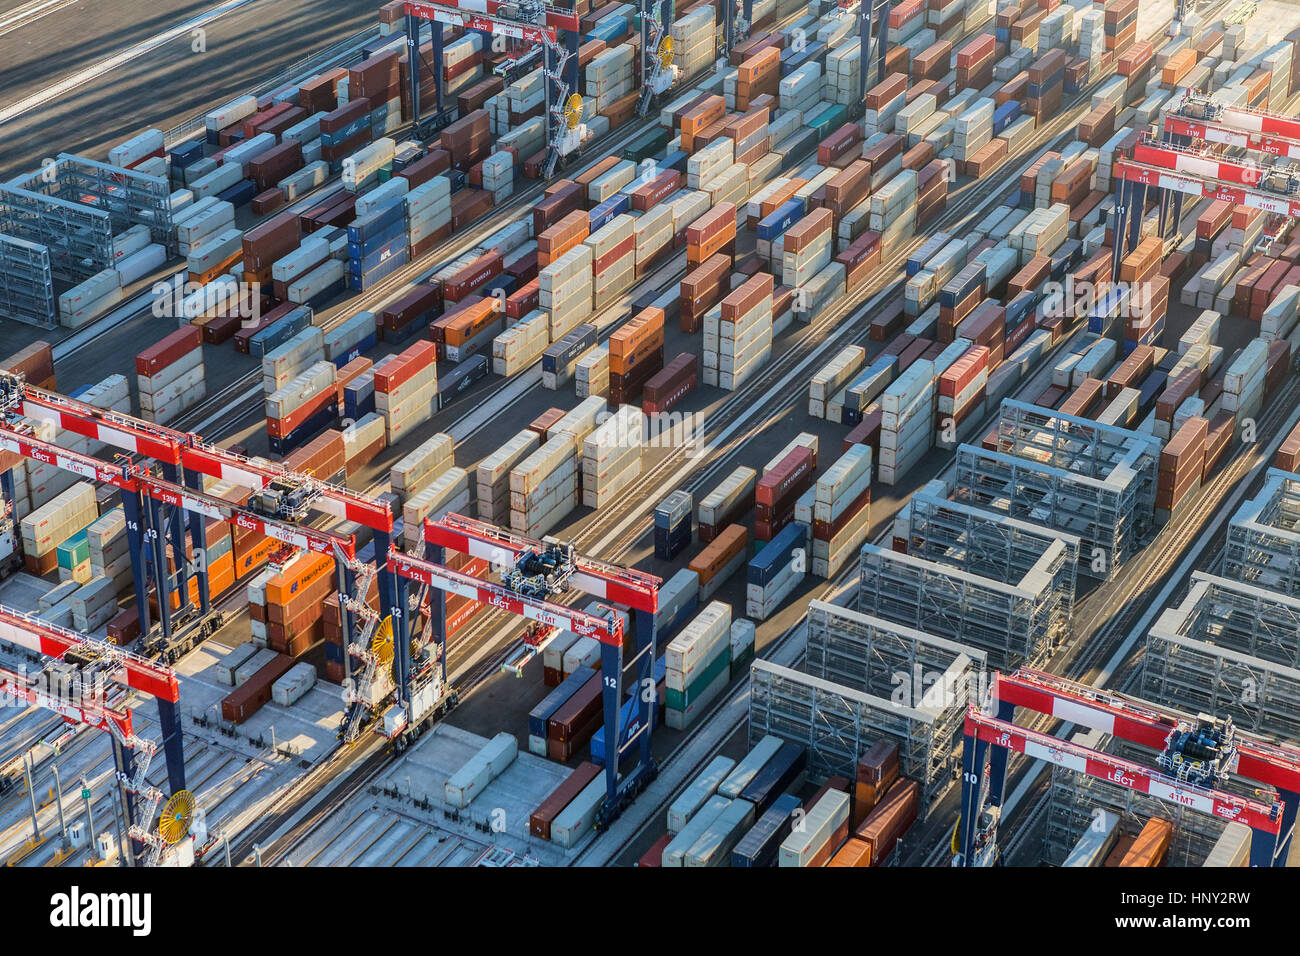 Los Angeles, California, USA - Agosto 16, 2016: Por la tarde vista aérea del lado del puerto de las pilas de contenedores de transporte. Foto de stock